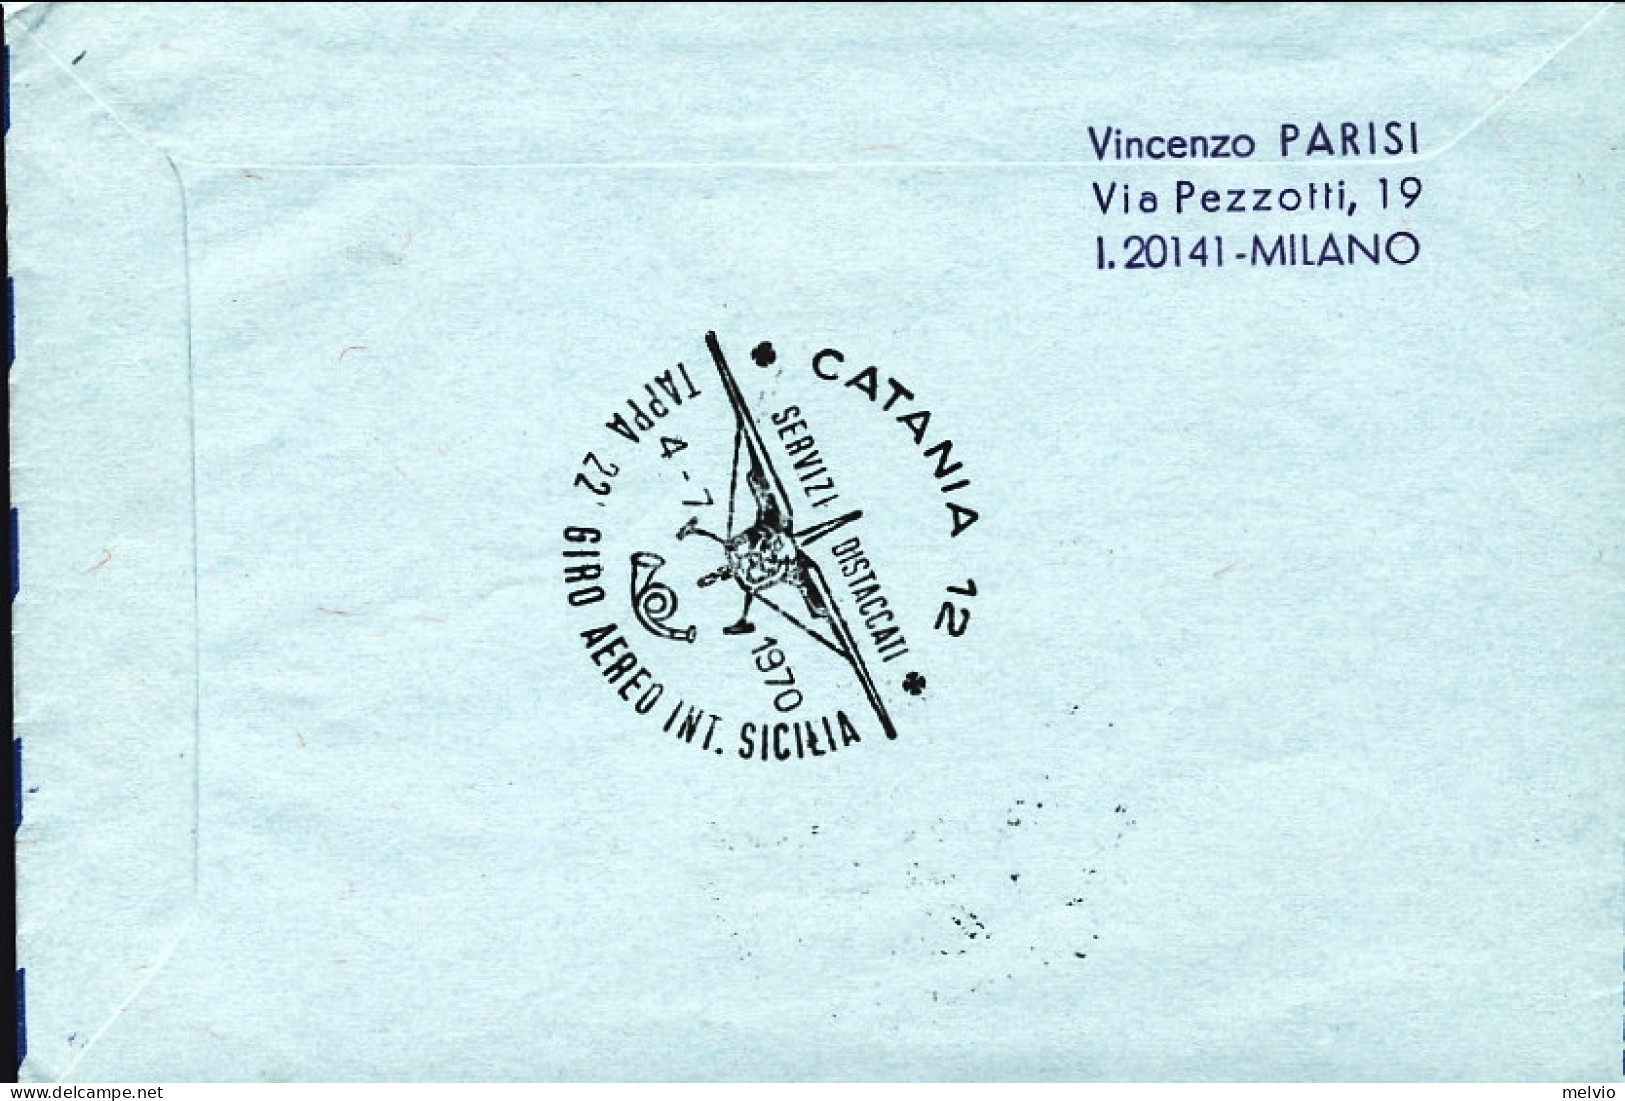 1970-Svizzera Per Il 22^ Giro Aereo Internazionale Di Sicilia Del 4 Luglio - First Flight Covers